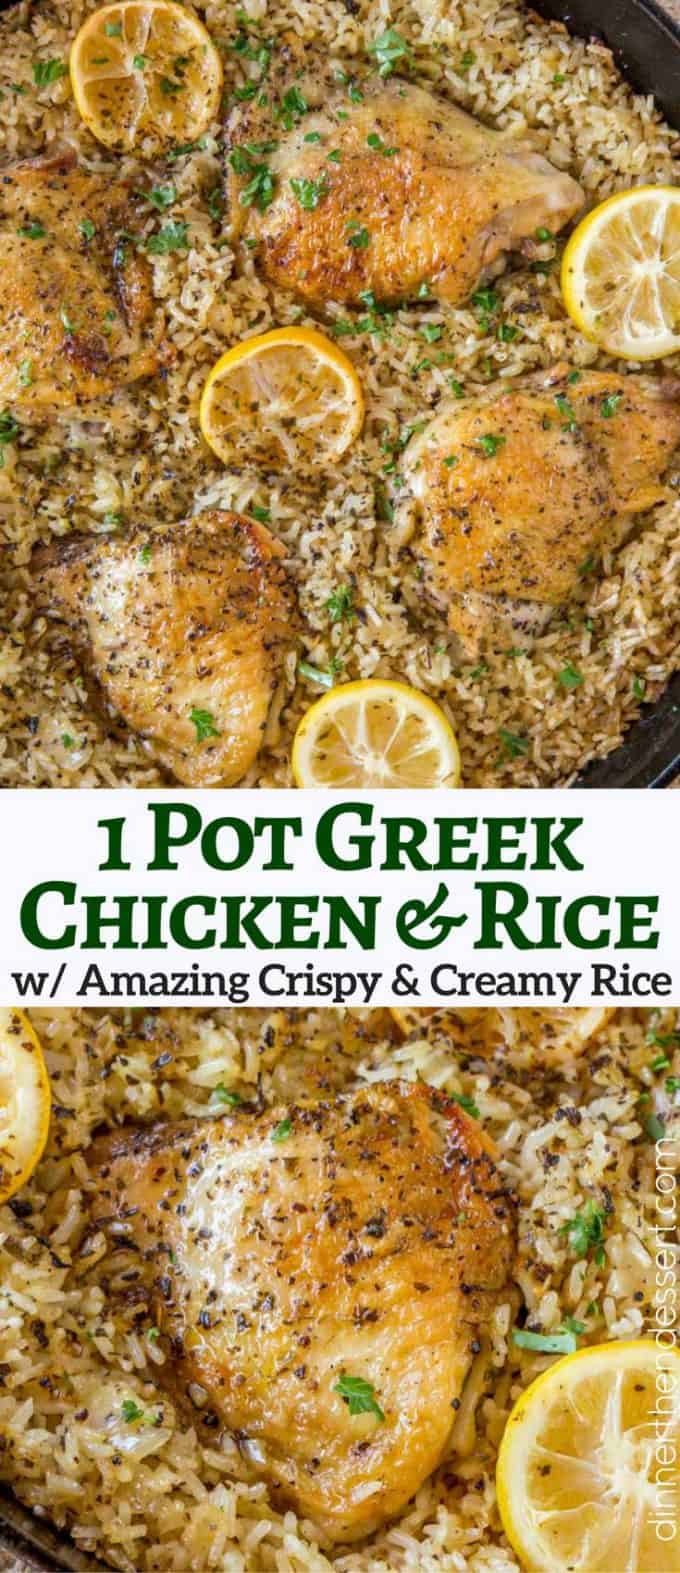 1 pot greek chicken & rice collage